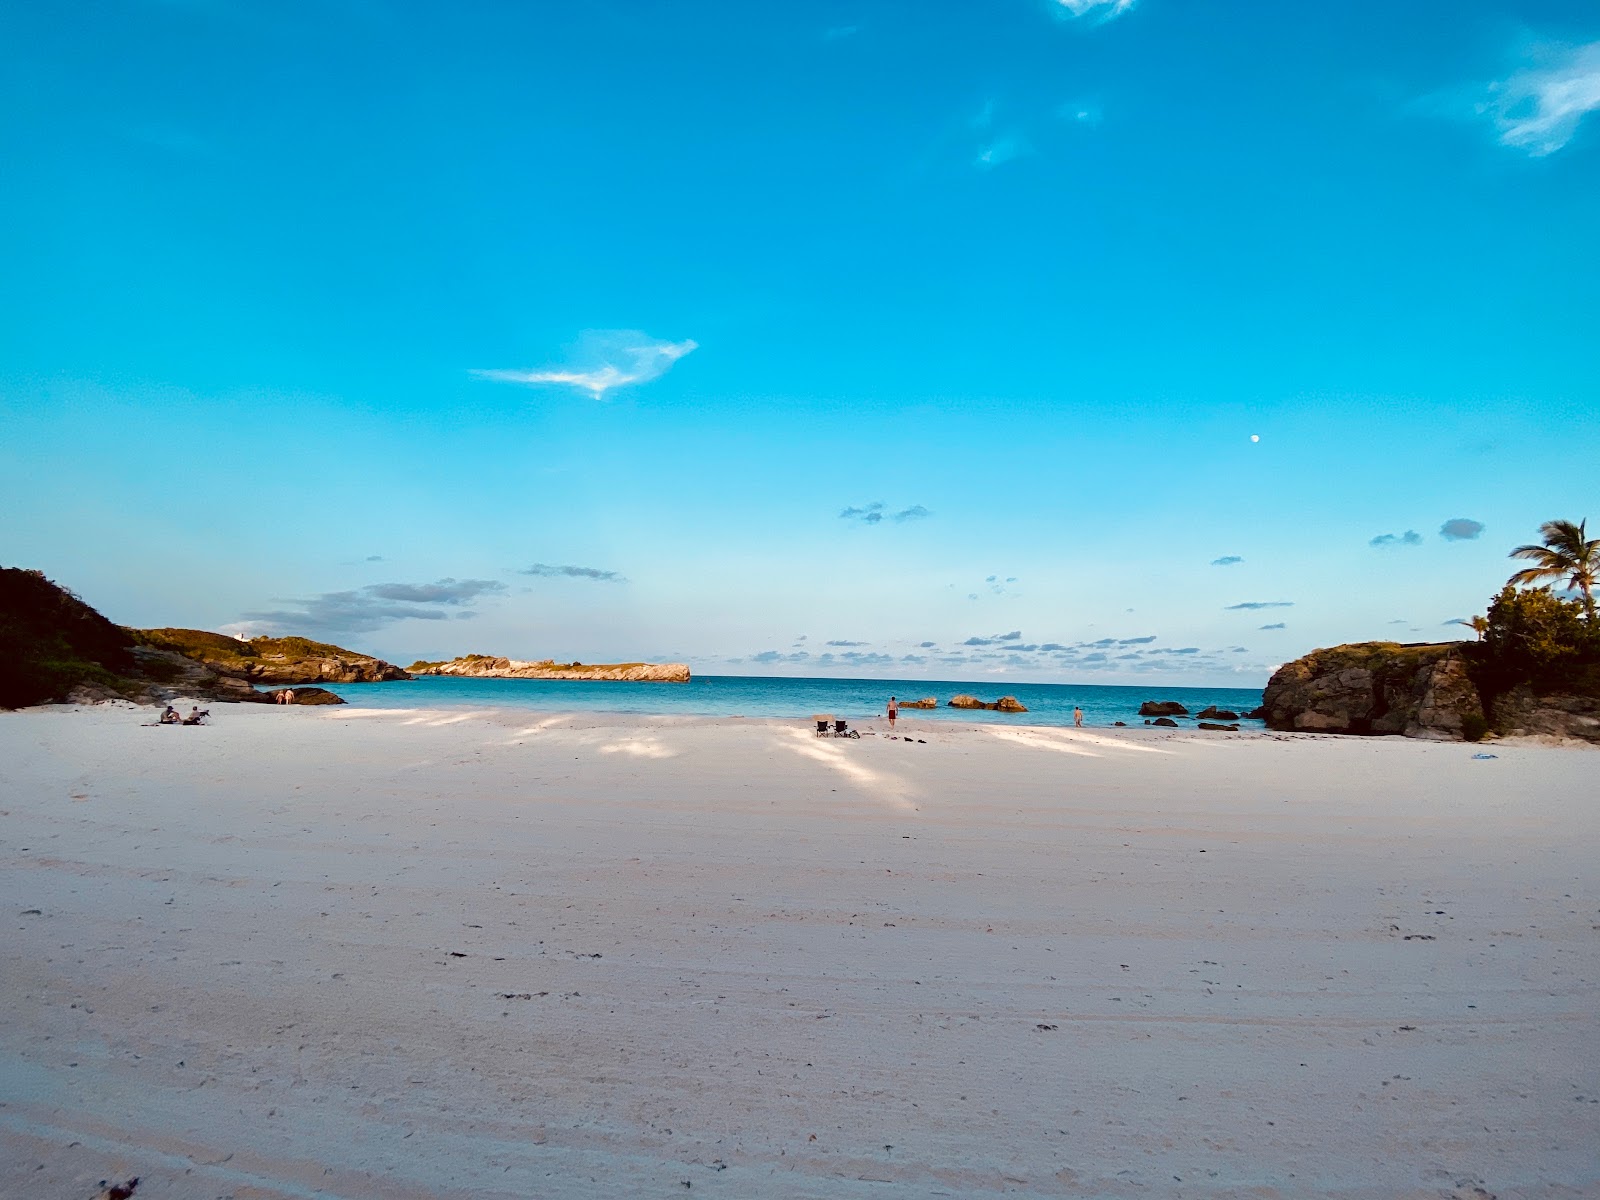 Fotografie cu Frick's beach cu o suprafață de nisip alb